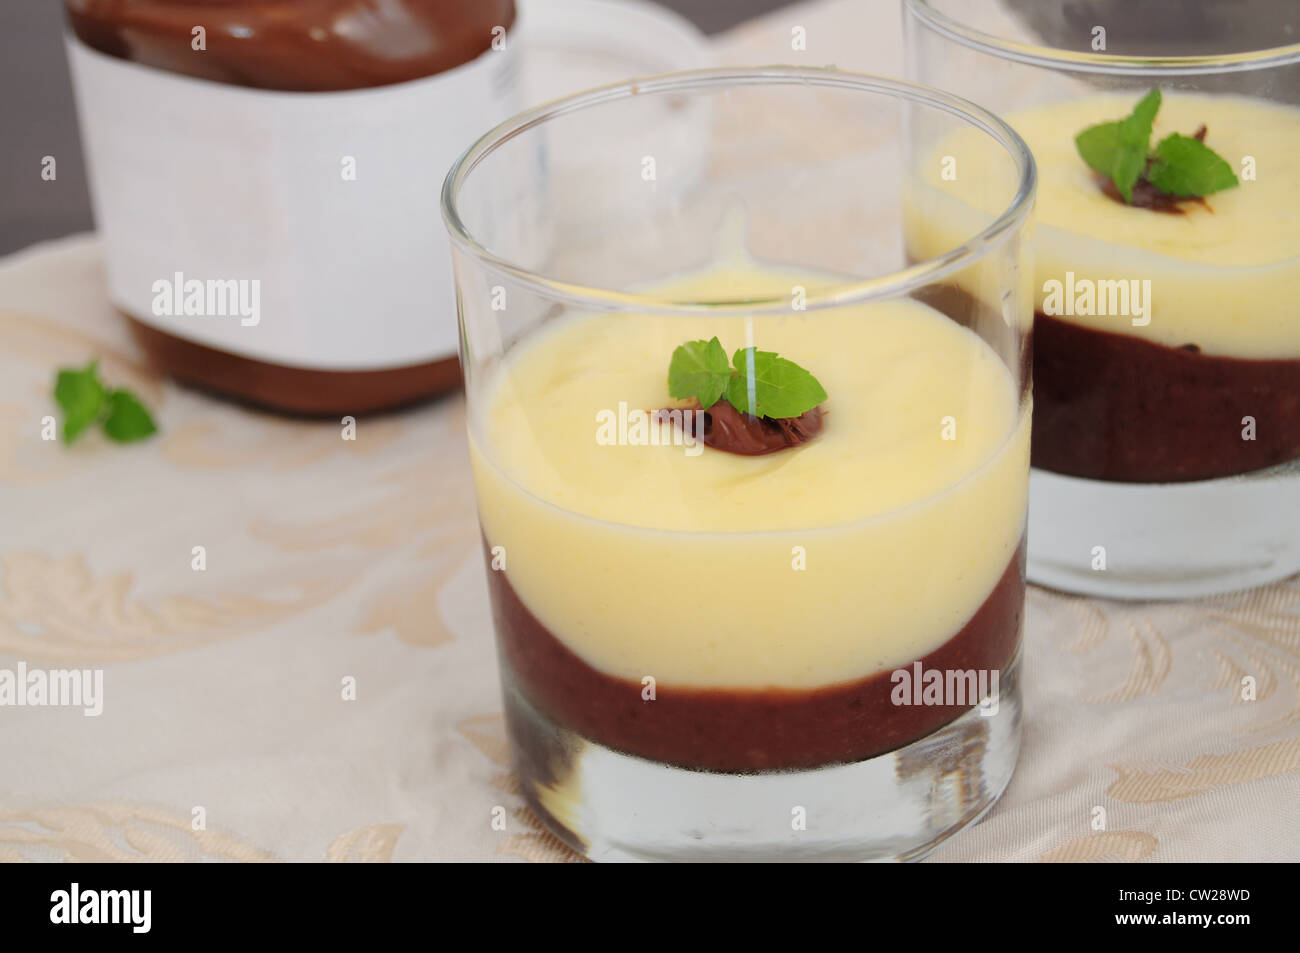 Cioccolato e panna alla vaniglia, servito in bicchieri e decorate con foglie di menta Foto Stock